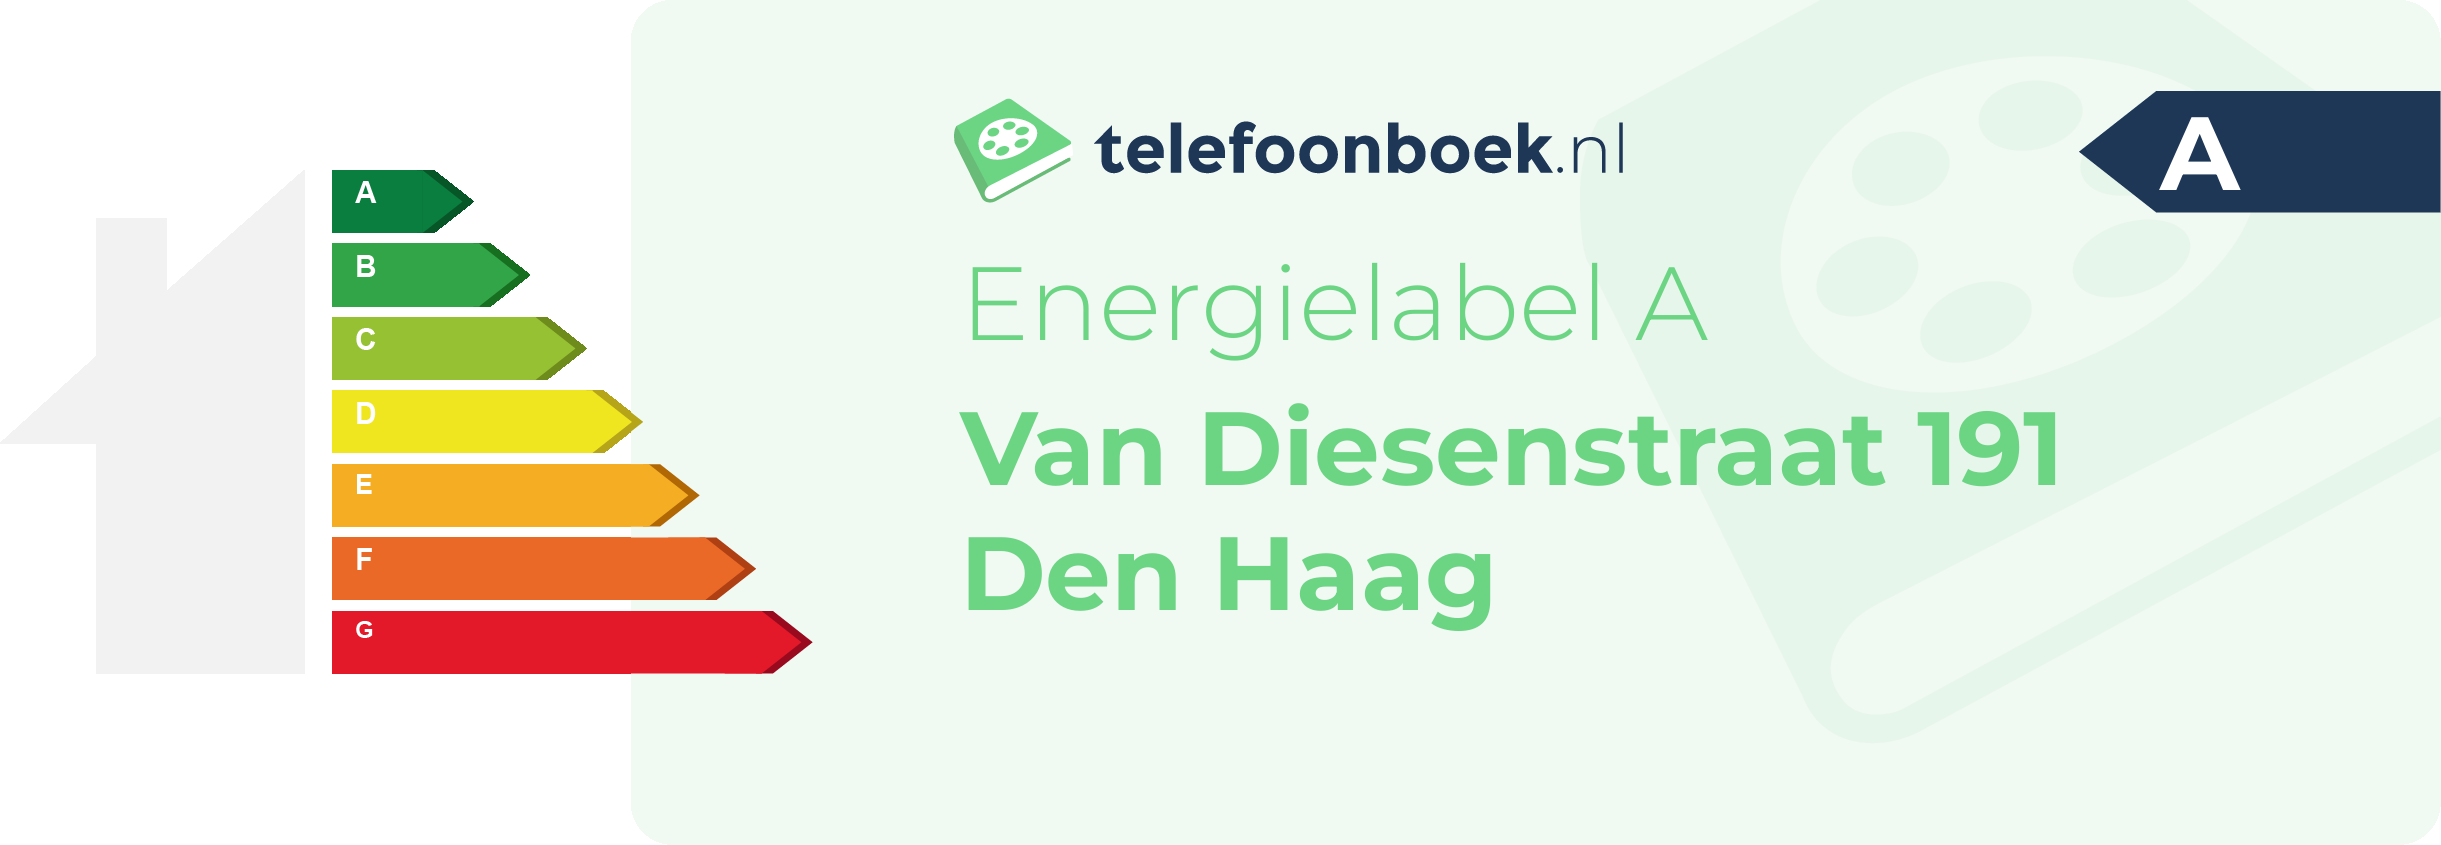 Energielabel Van Diesenstraat 191 Den Haag